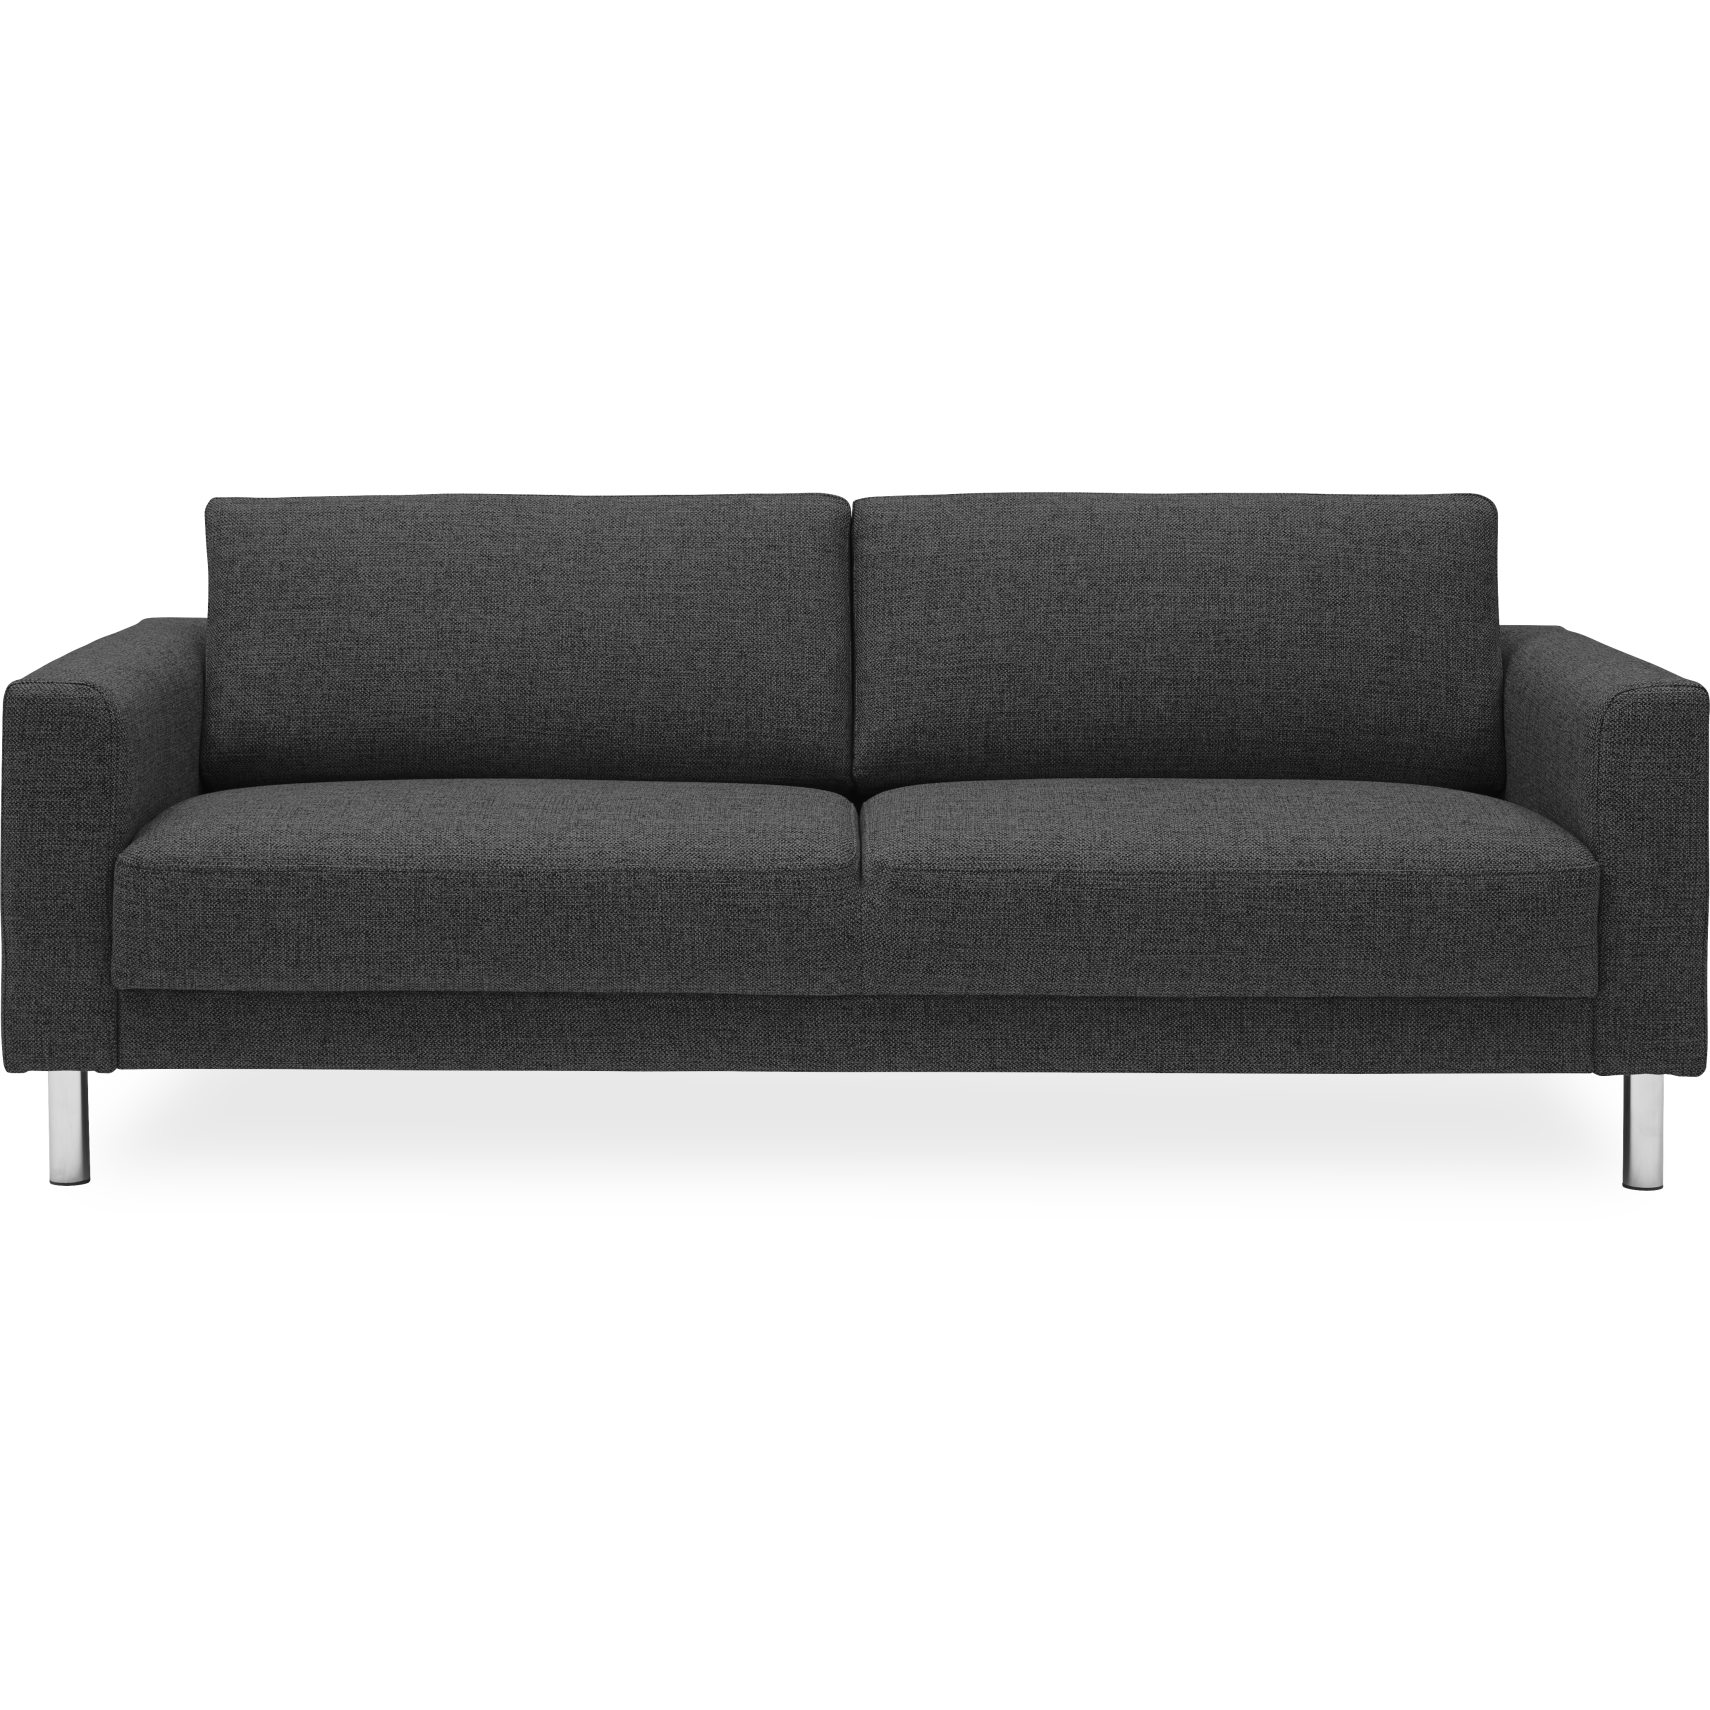 2 personers og 3 sofa - Se udvalget online her | ILVA.dk